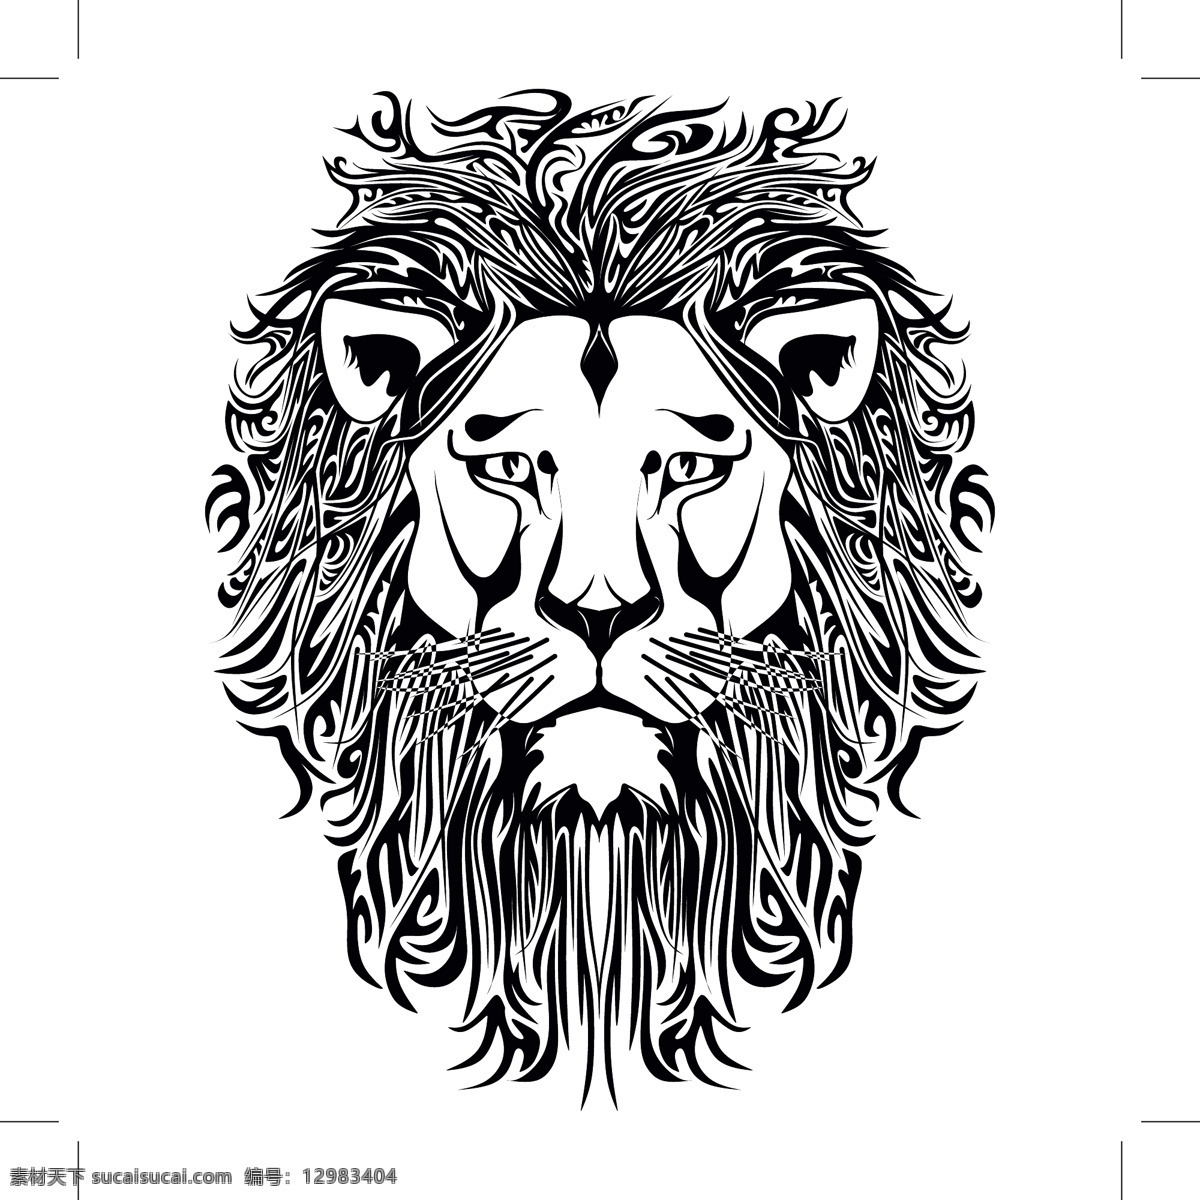 雄狮 头 图案 花纹 狮子图案花纹 矢量动物 卡通动物 动物插画 陆地动物 生物世界 矢量素材 白色